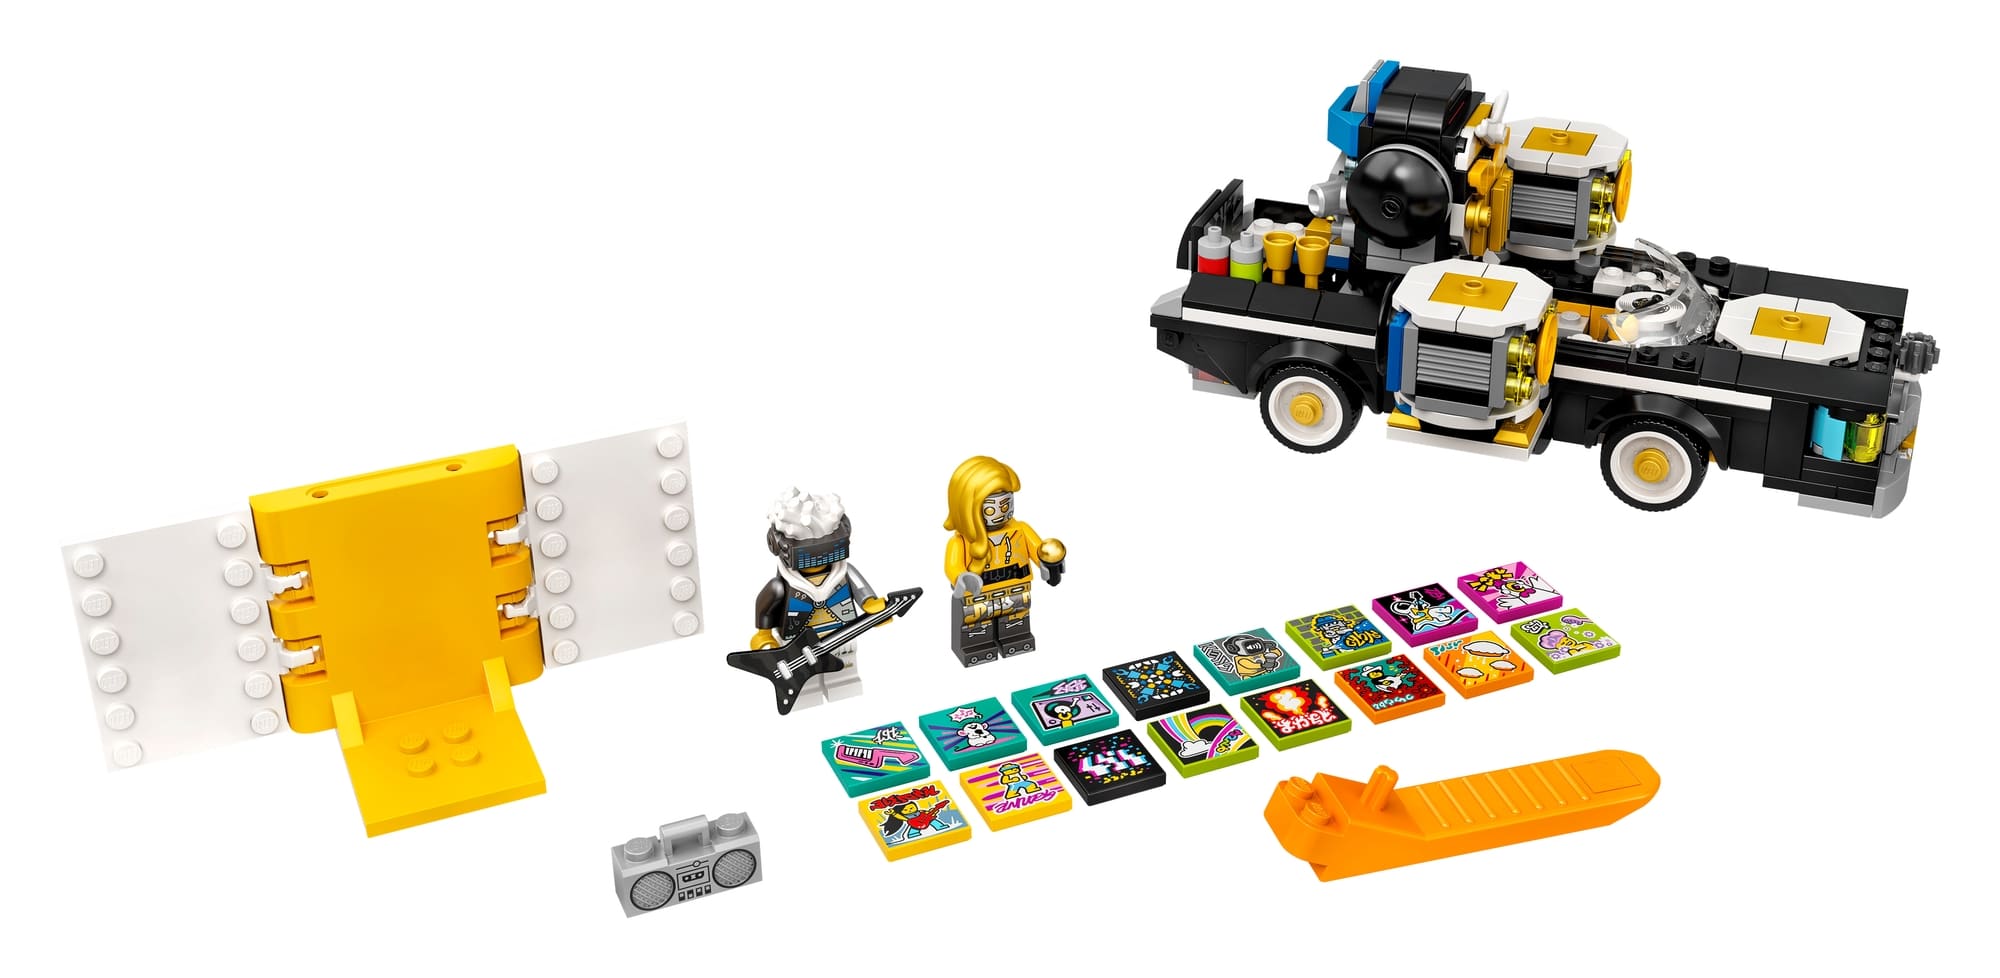 LEGO Vidiyo 43112 Robo Hiphop Car 1